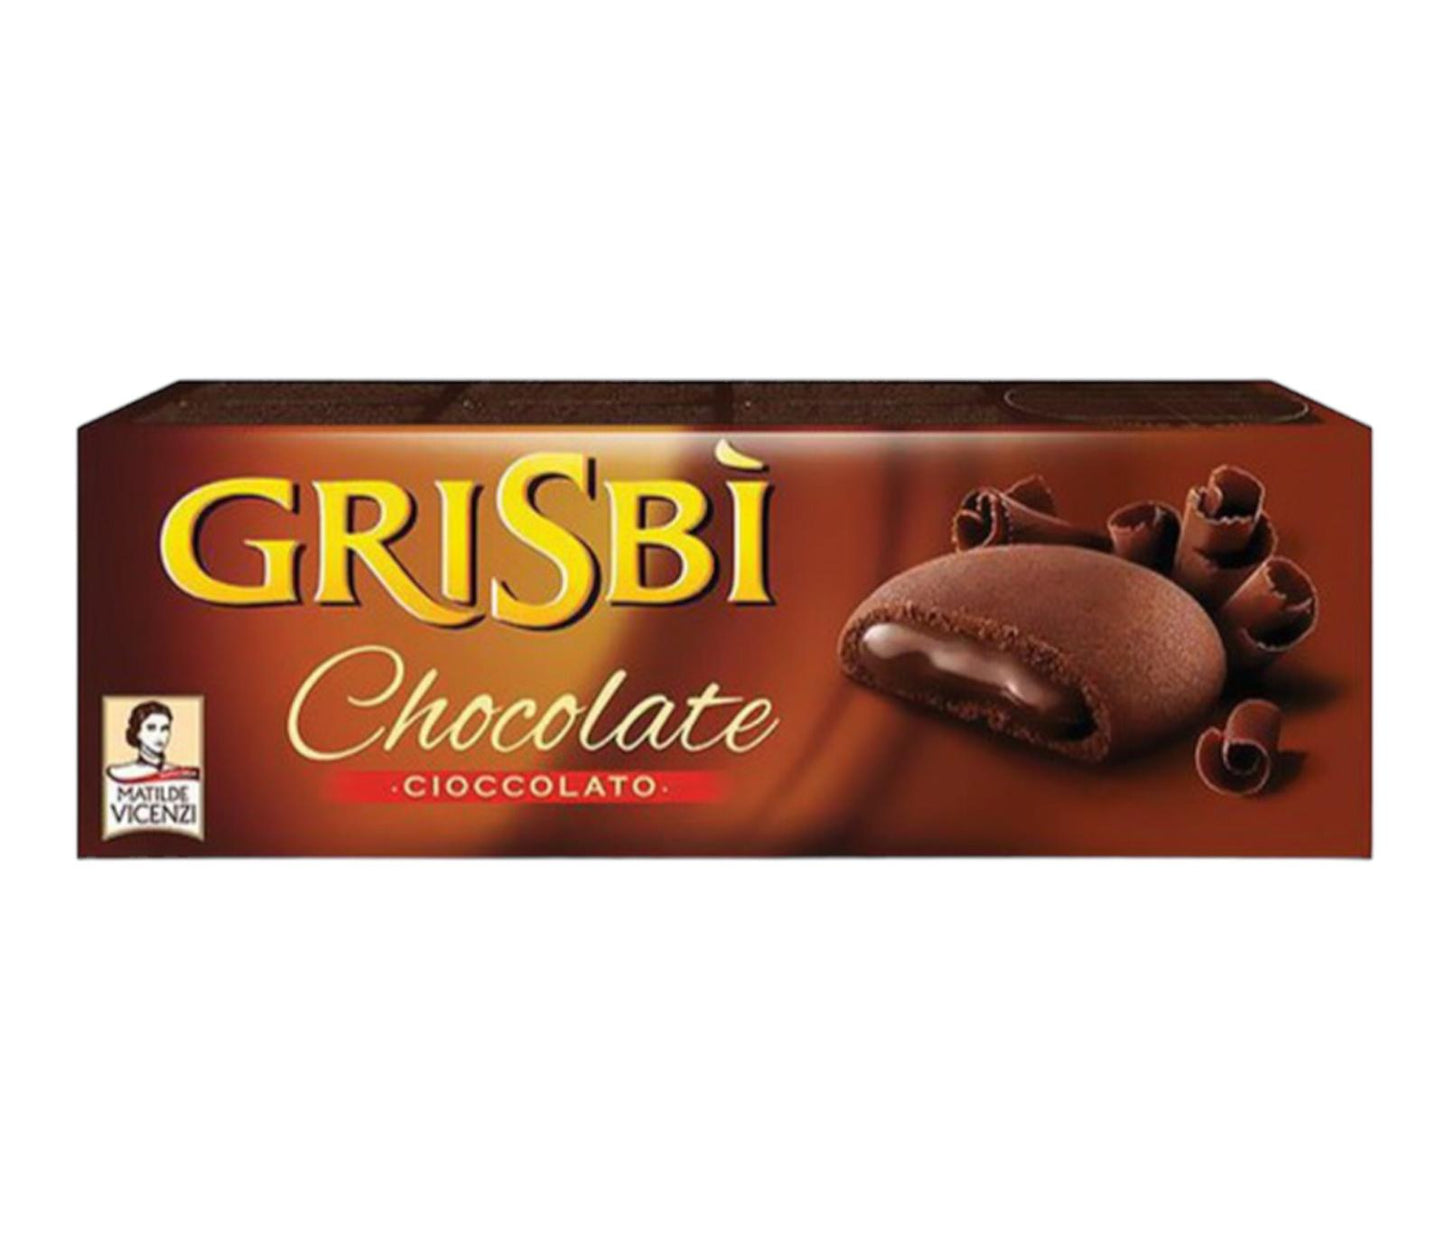 Matilde Vincenzi Grisbì biscotti al gusto cioccolato confezione da 135g